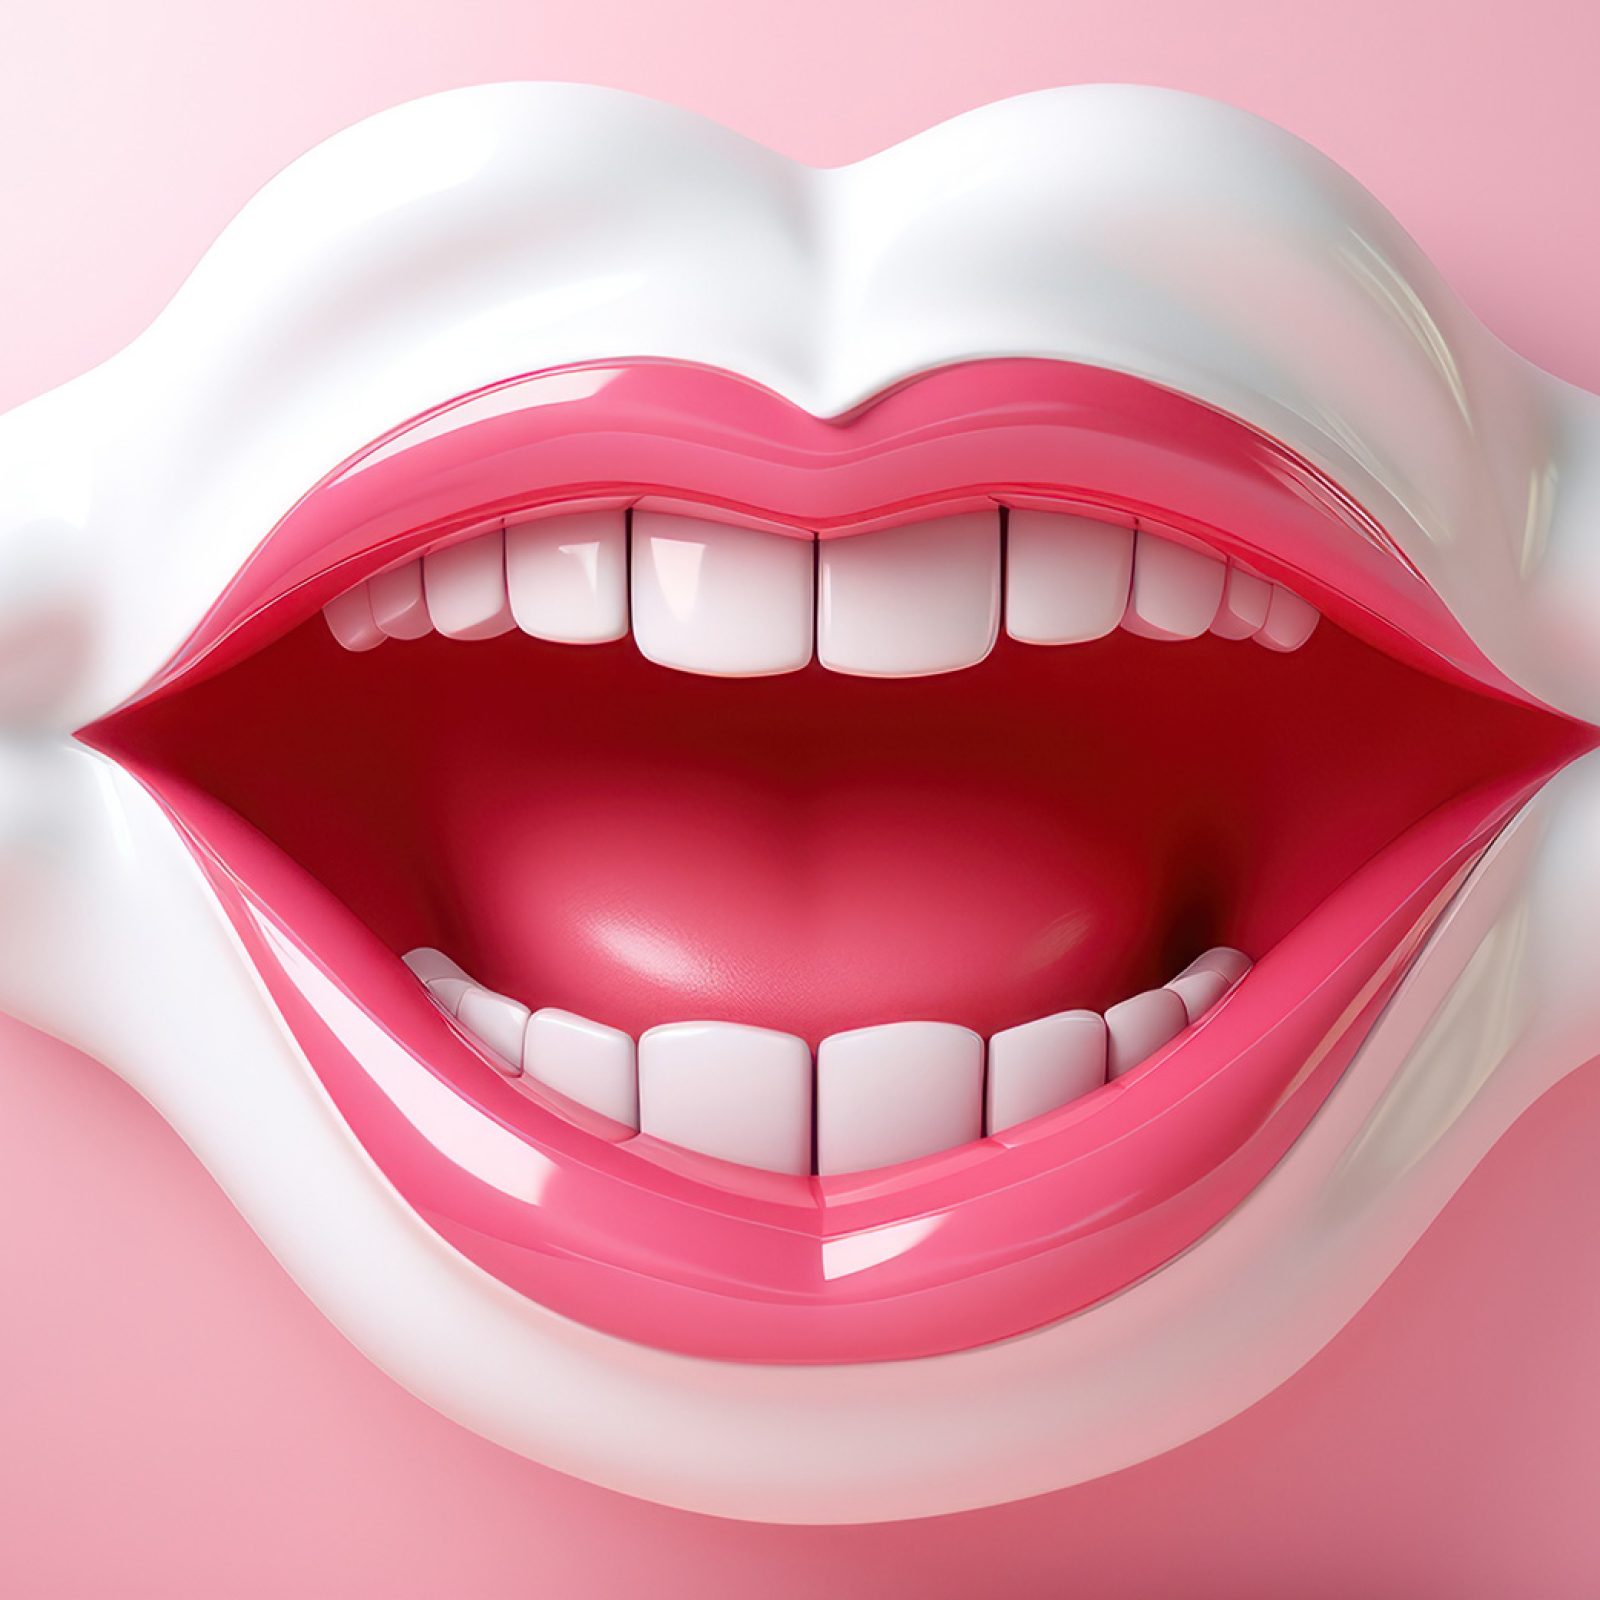 Hambakatt ja suuhügienisti tähtis roll selle eemaldamisel